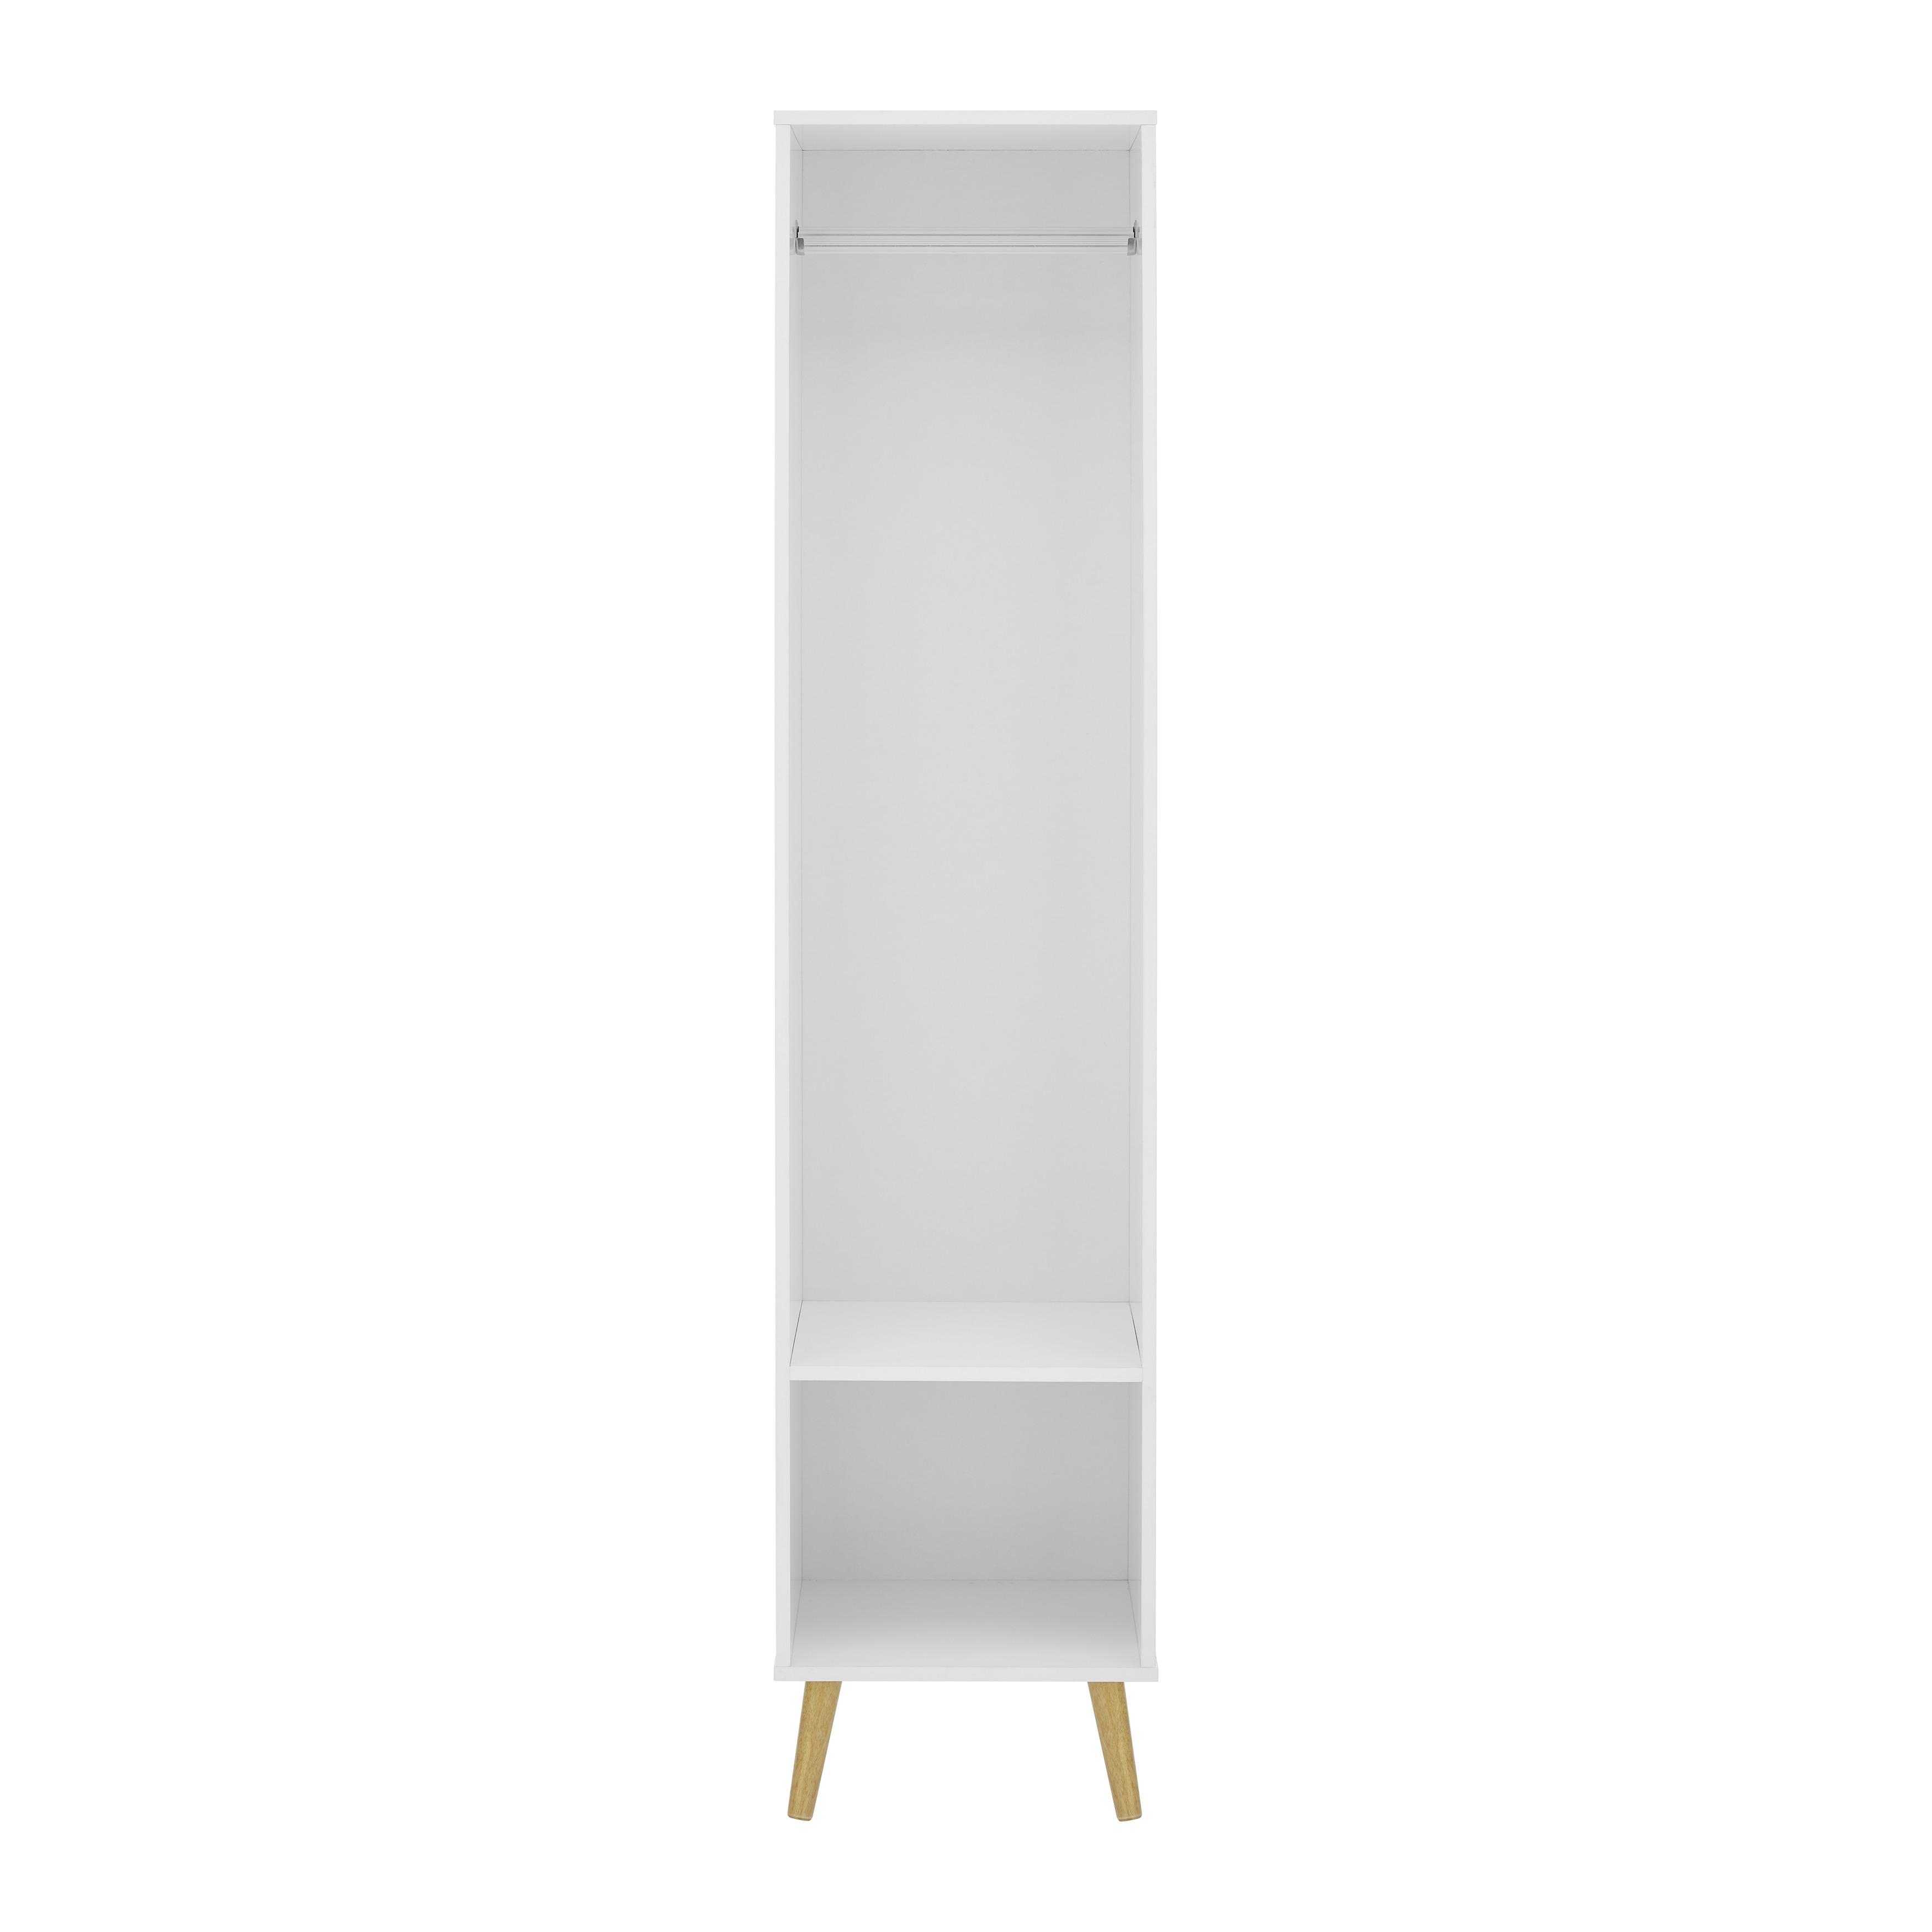 Kleiderschrank "Ludo", weiß - Weiß, MODERN, Holz/Metall (40/180/40cm) - Bessagi Home